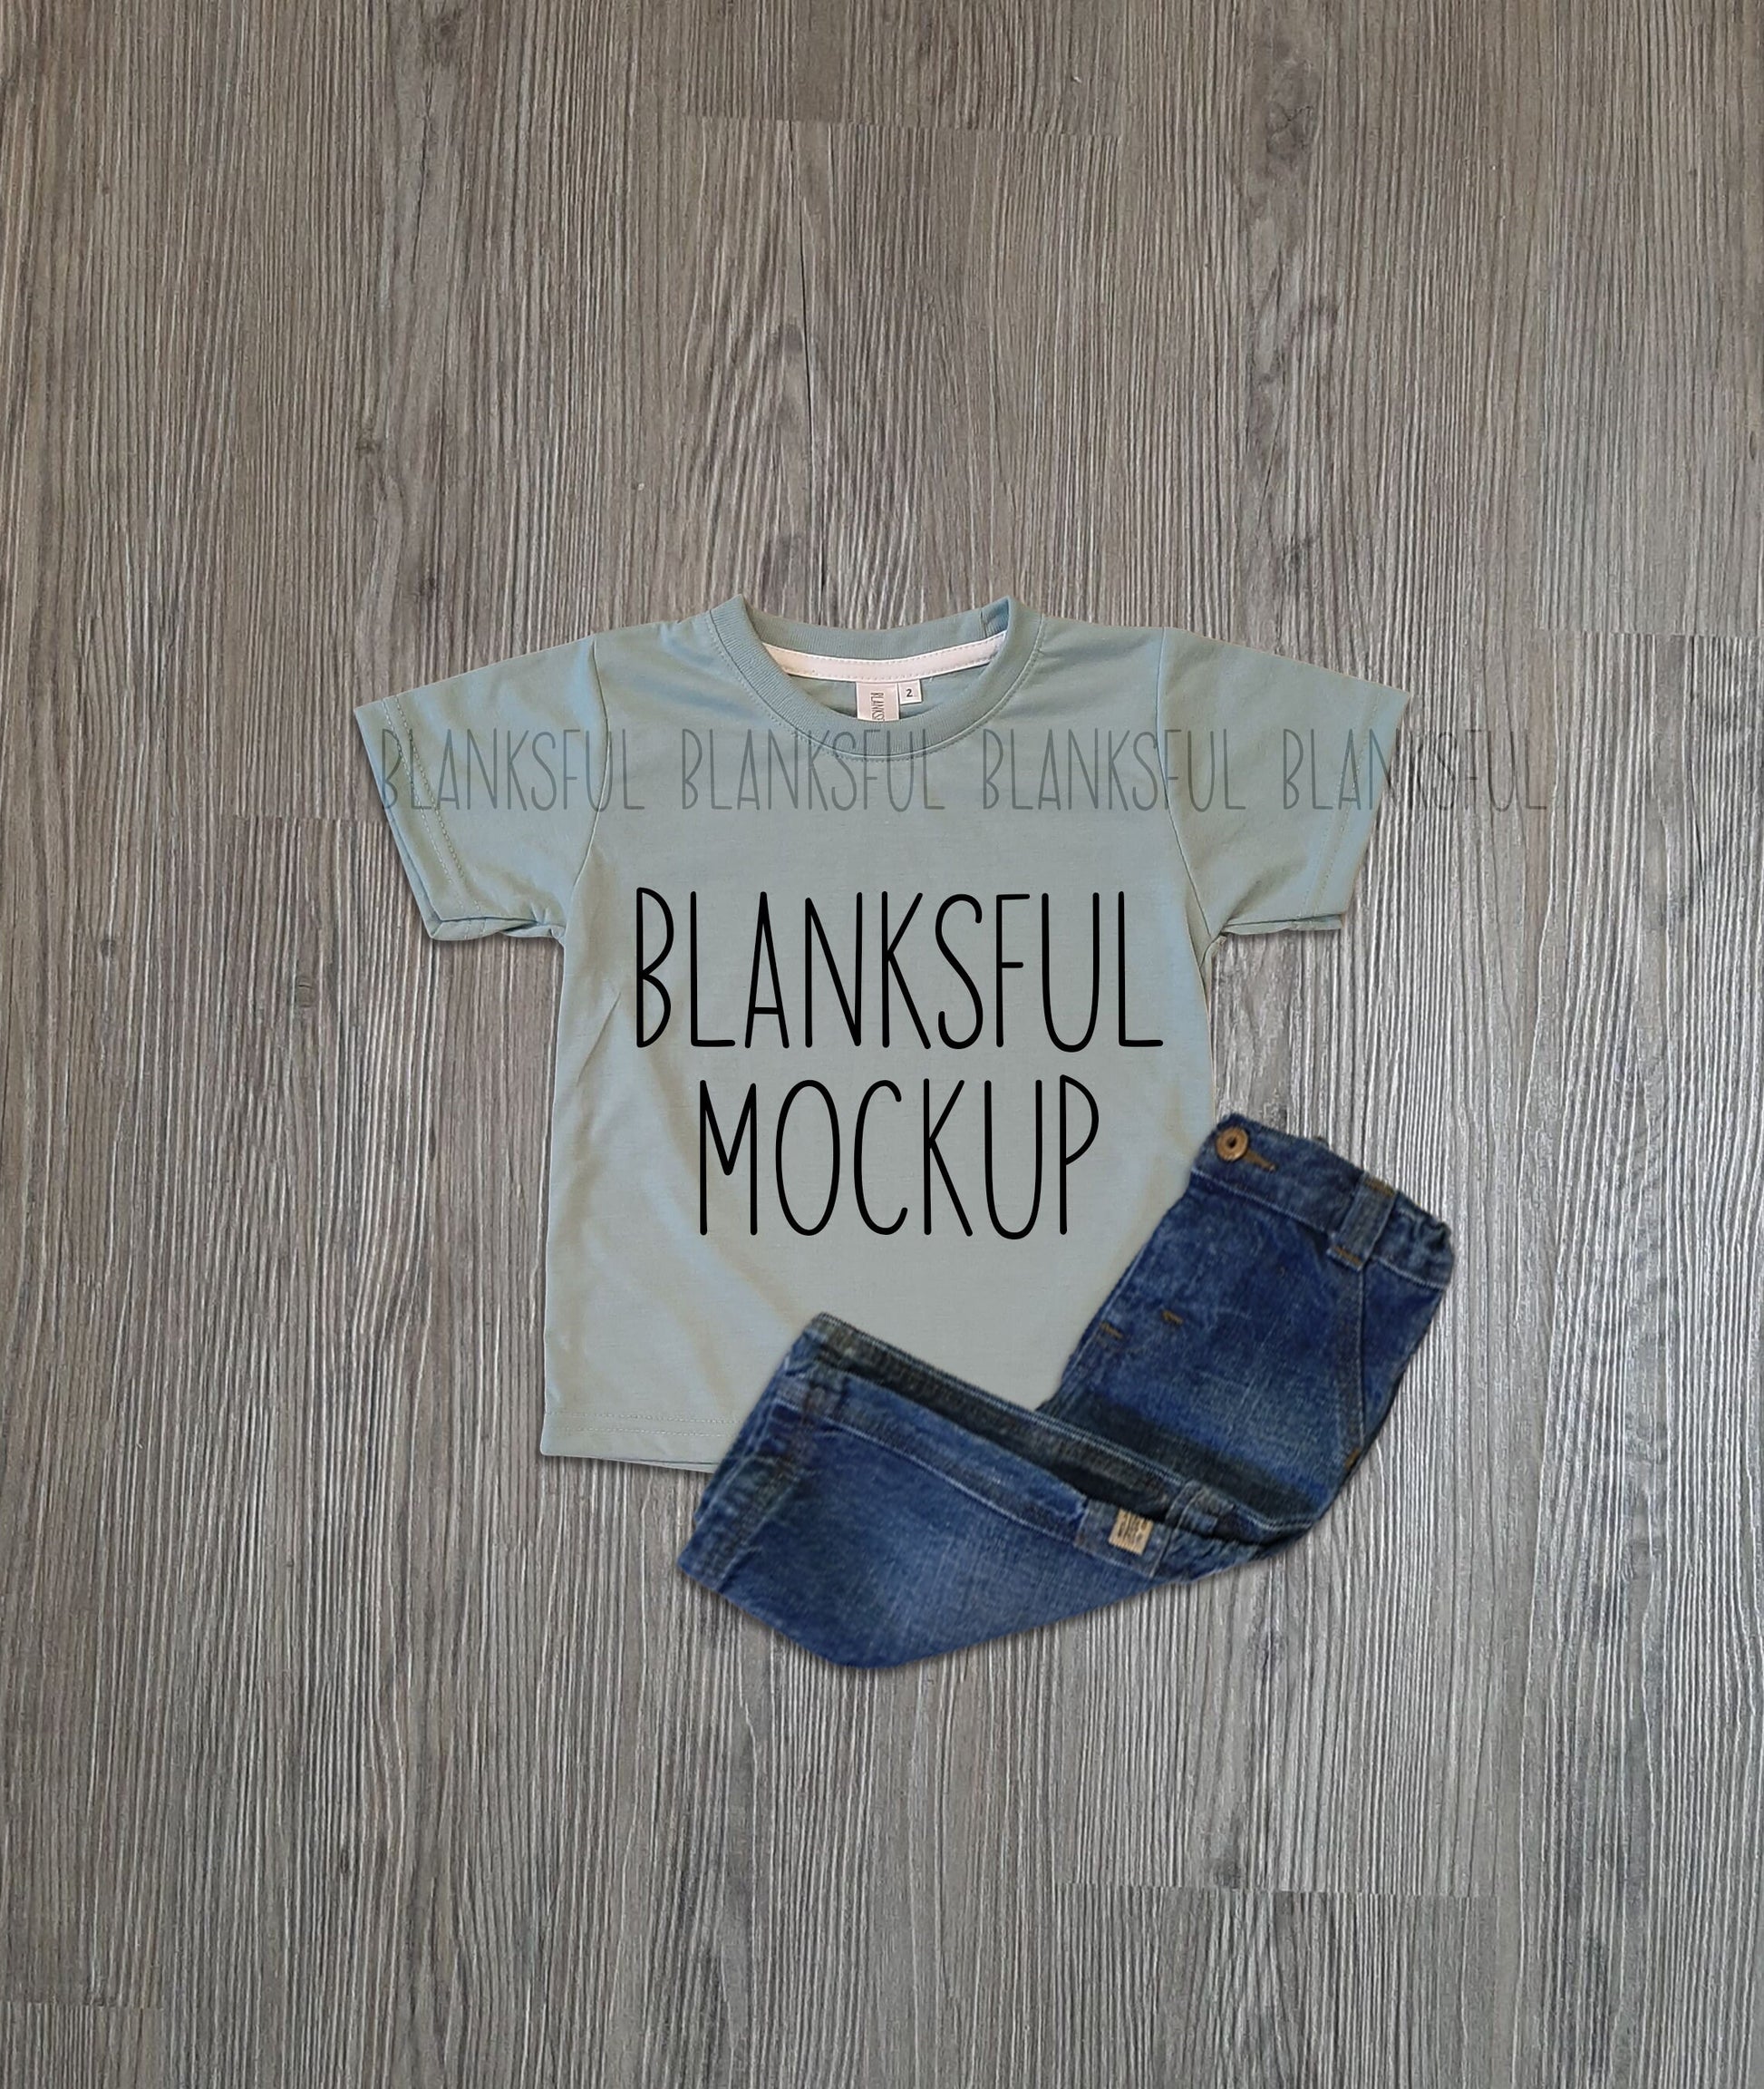 Blanksful Mockup Teal Child Shirt - Shirt mockup for sublimation - Mock up child shirt - Flay Lay Mockup